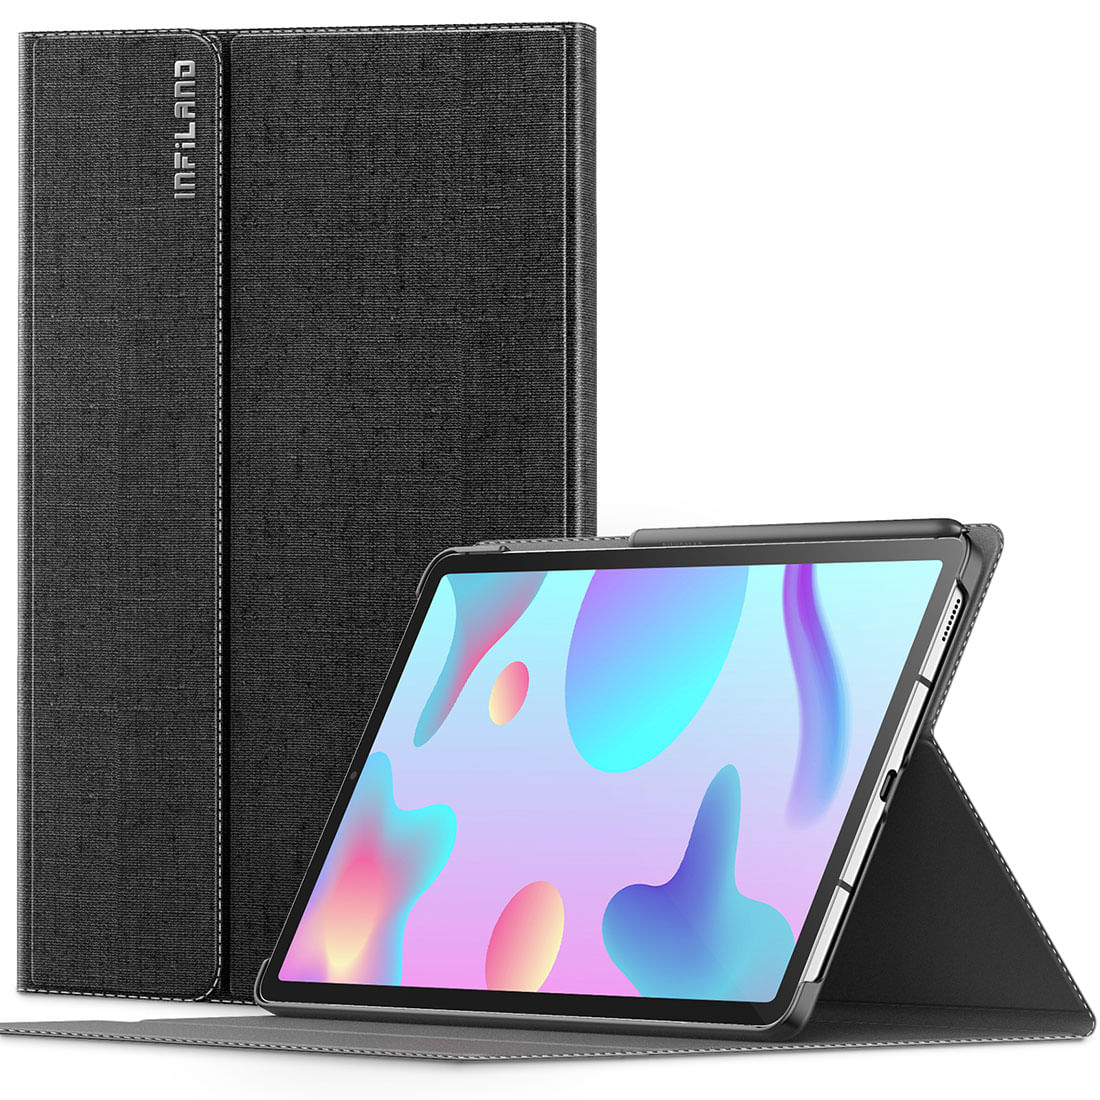 Capa Premium Classic Series com Fino Acabamento Galaxy Tab S6 Lite 10.4 pol (2019) SM-P610 e SM-P615